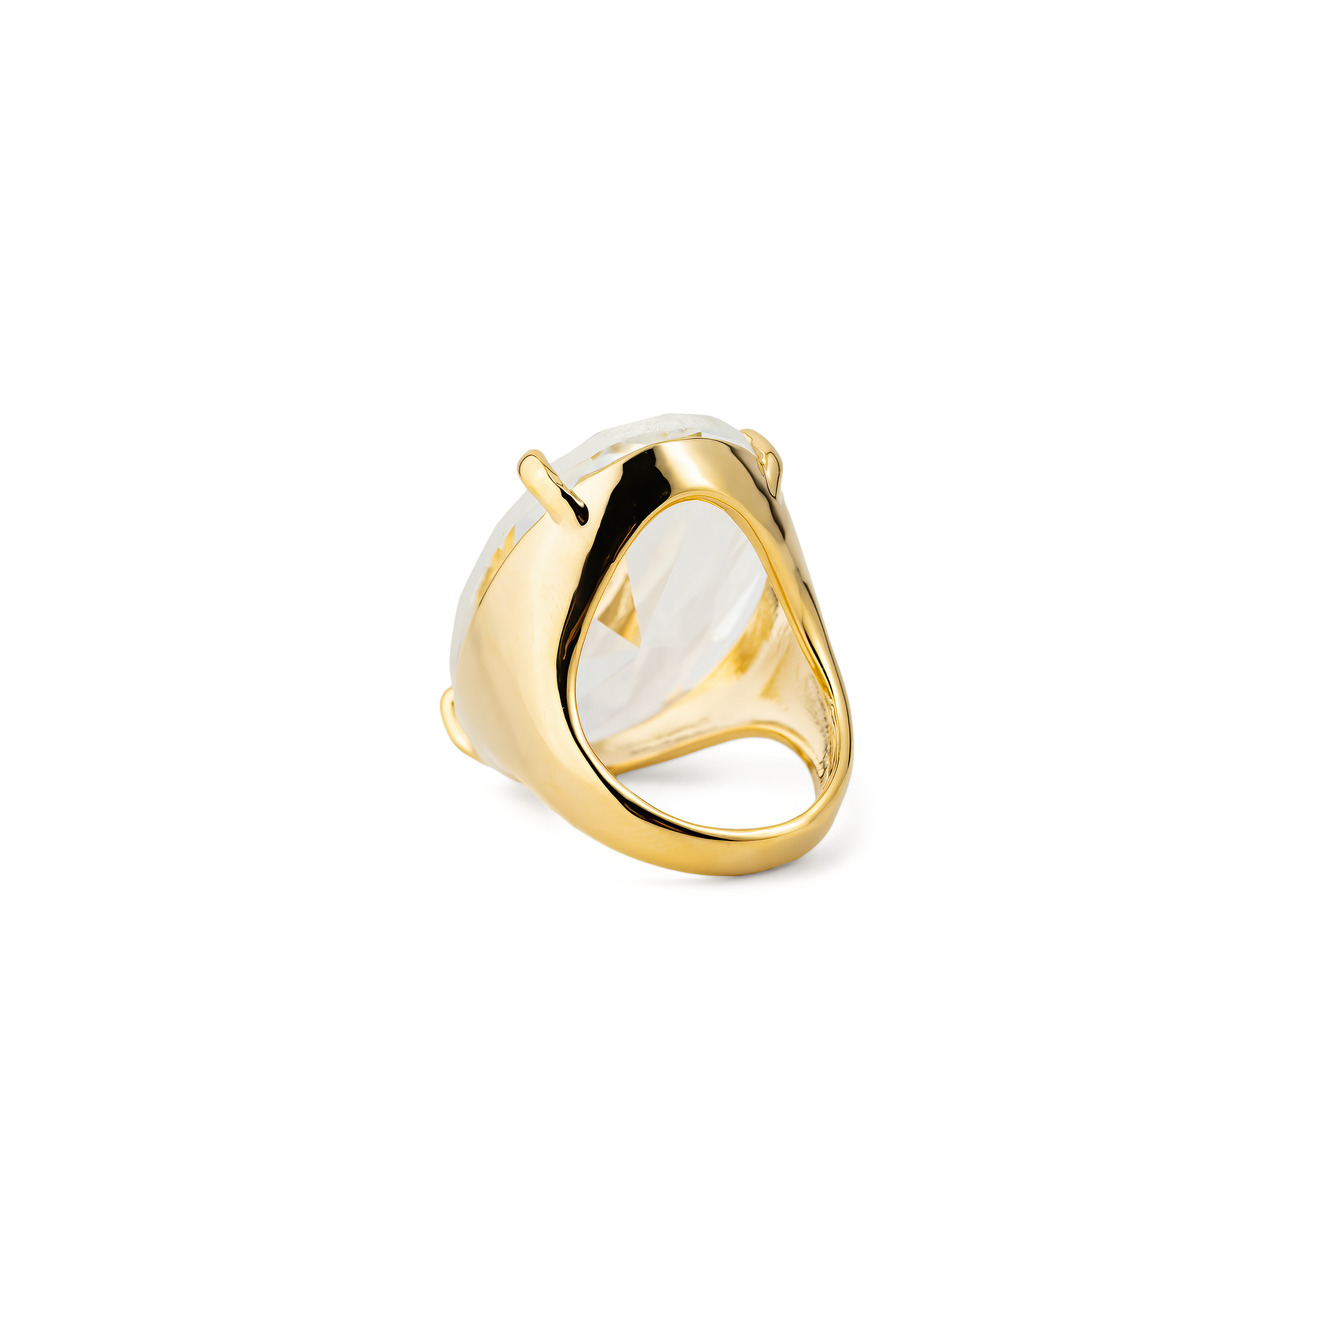 Herald Percy Золотистое кольцо с овальным кристаллом herald percy серебристая цепочка с розовым кристаллом